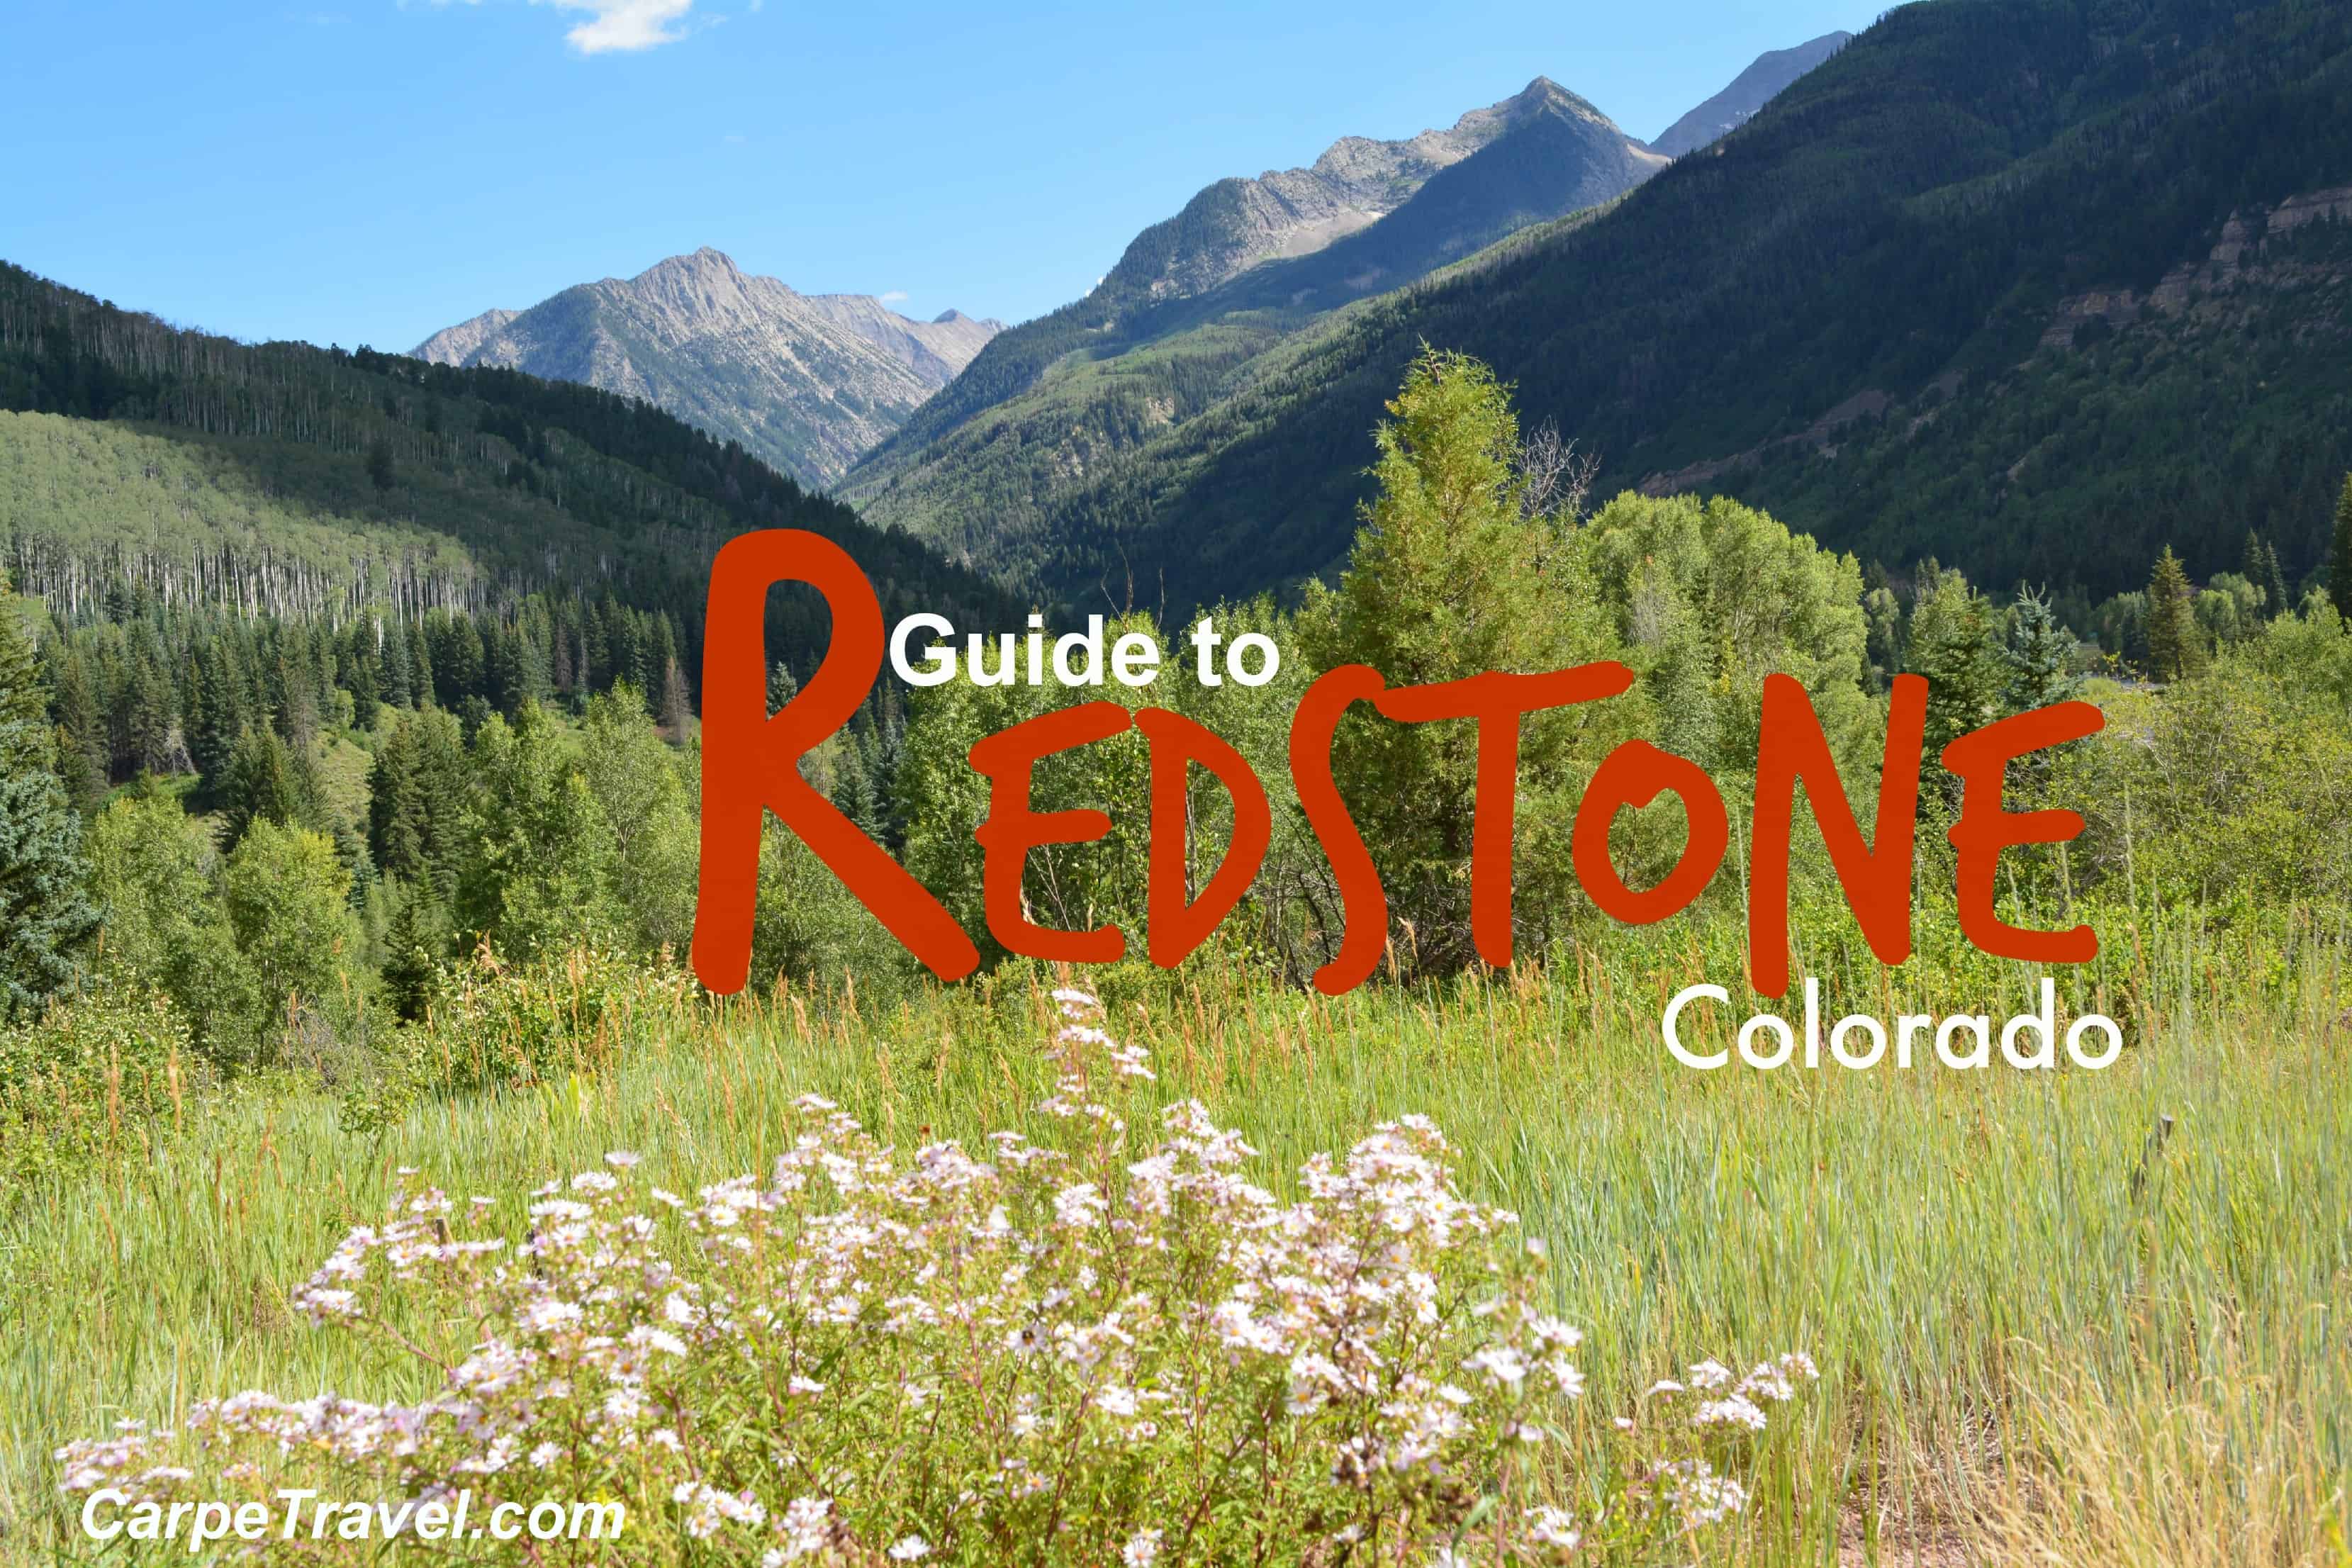 guide to redstone colorado